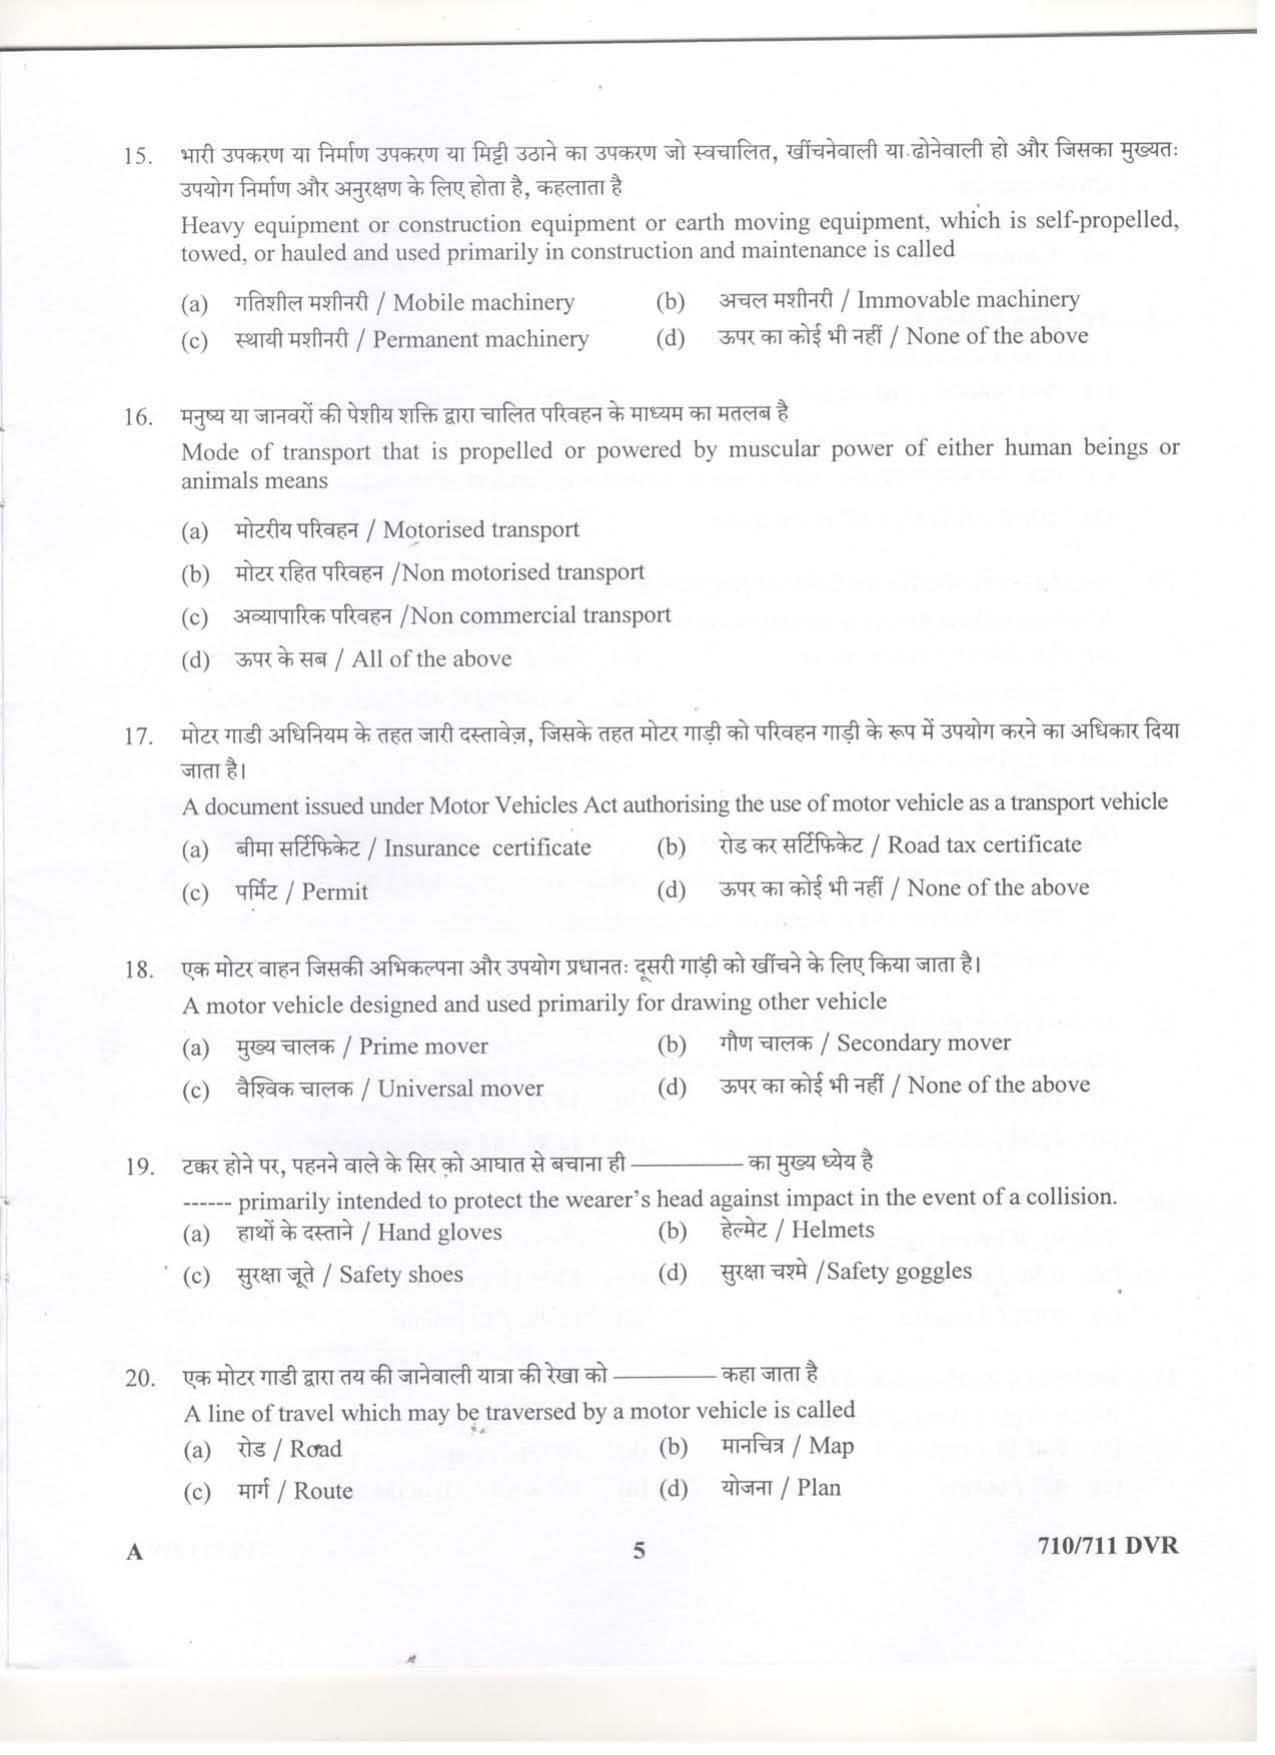 LPSC Driver (LVD/HVD) 2019 Question Paper - Page 5